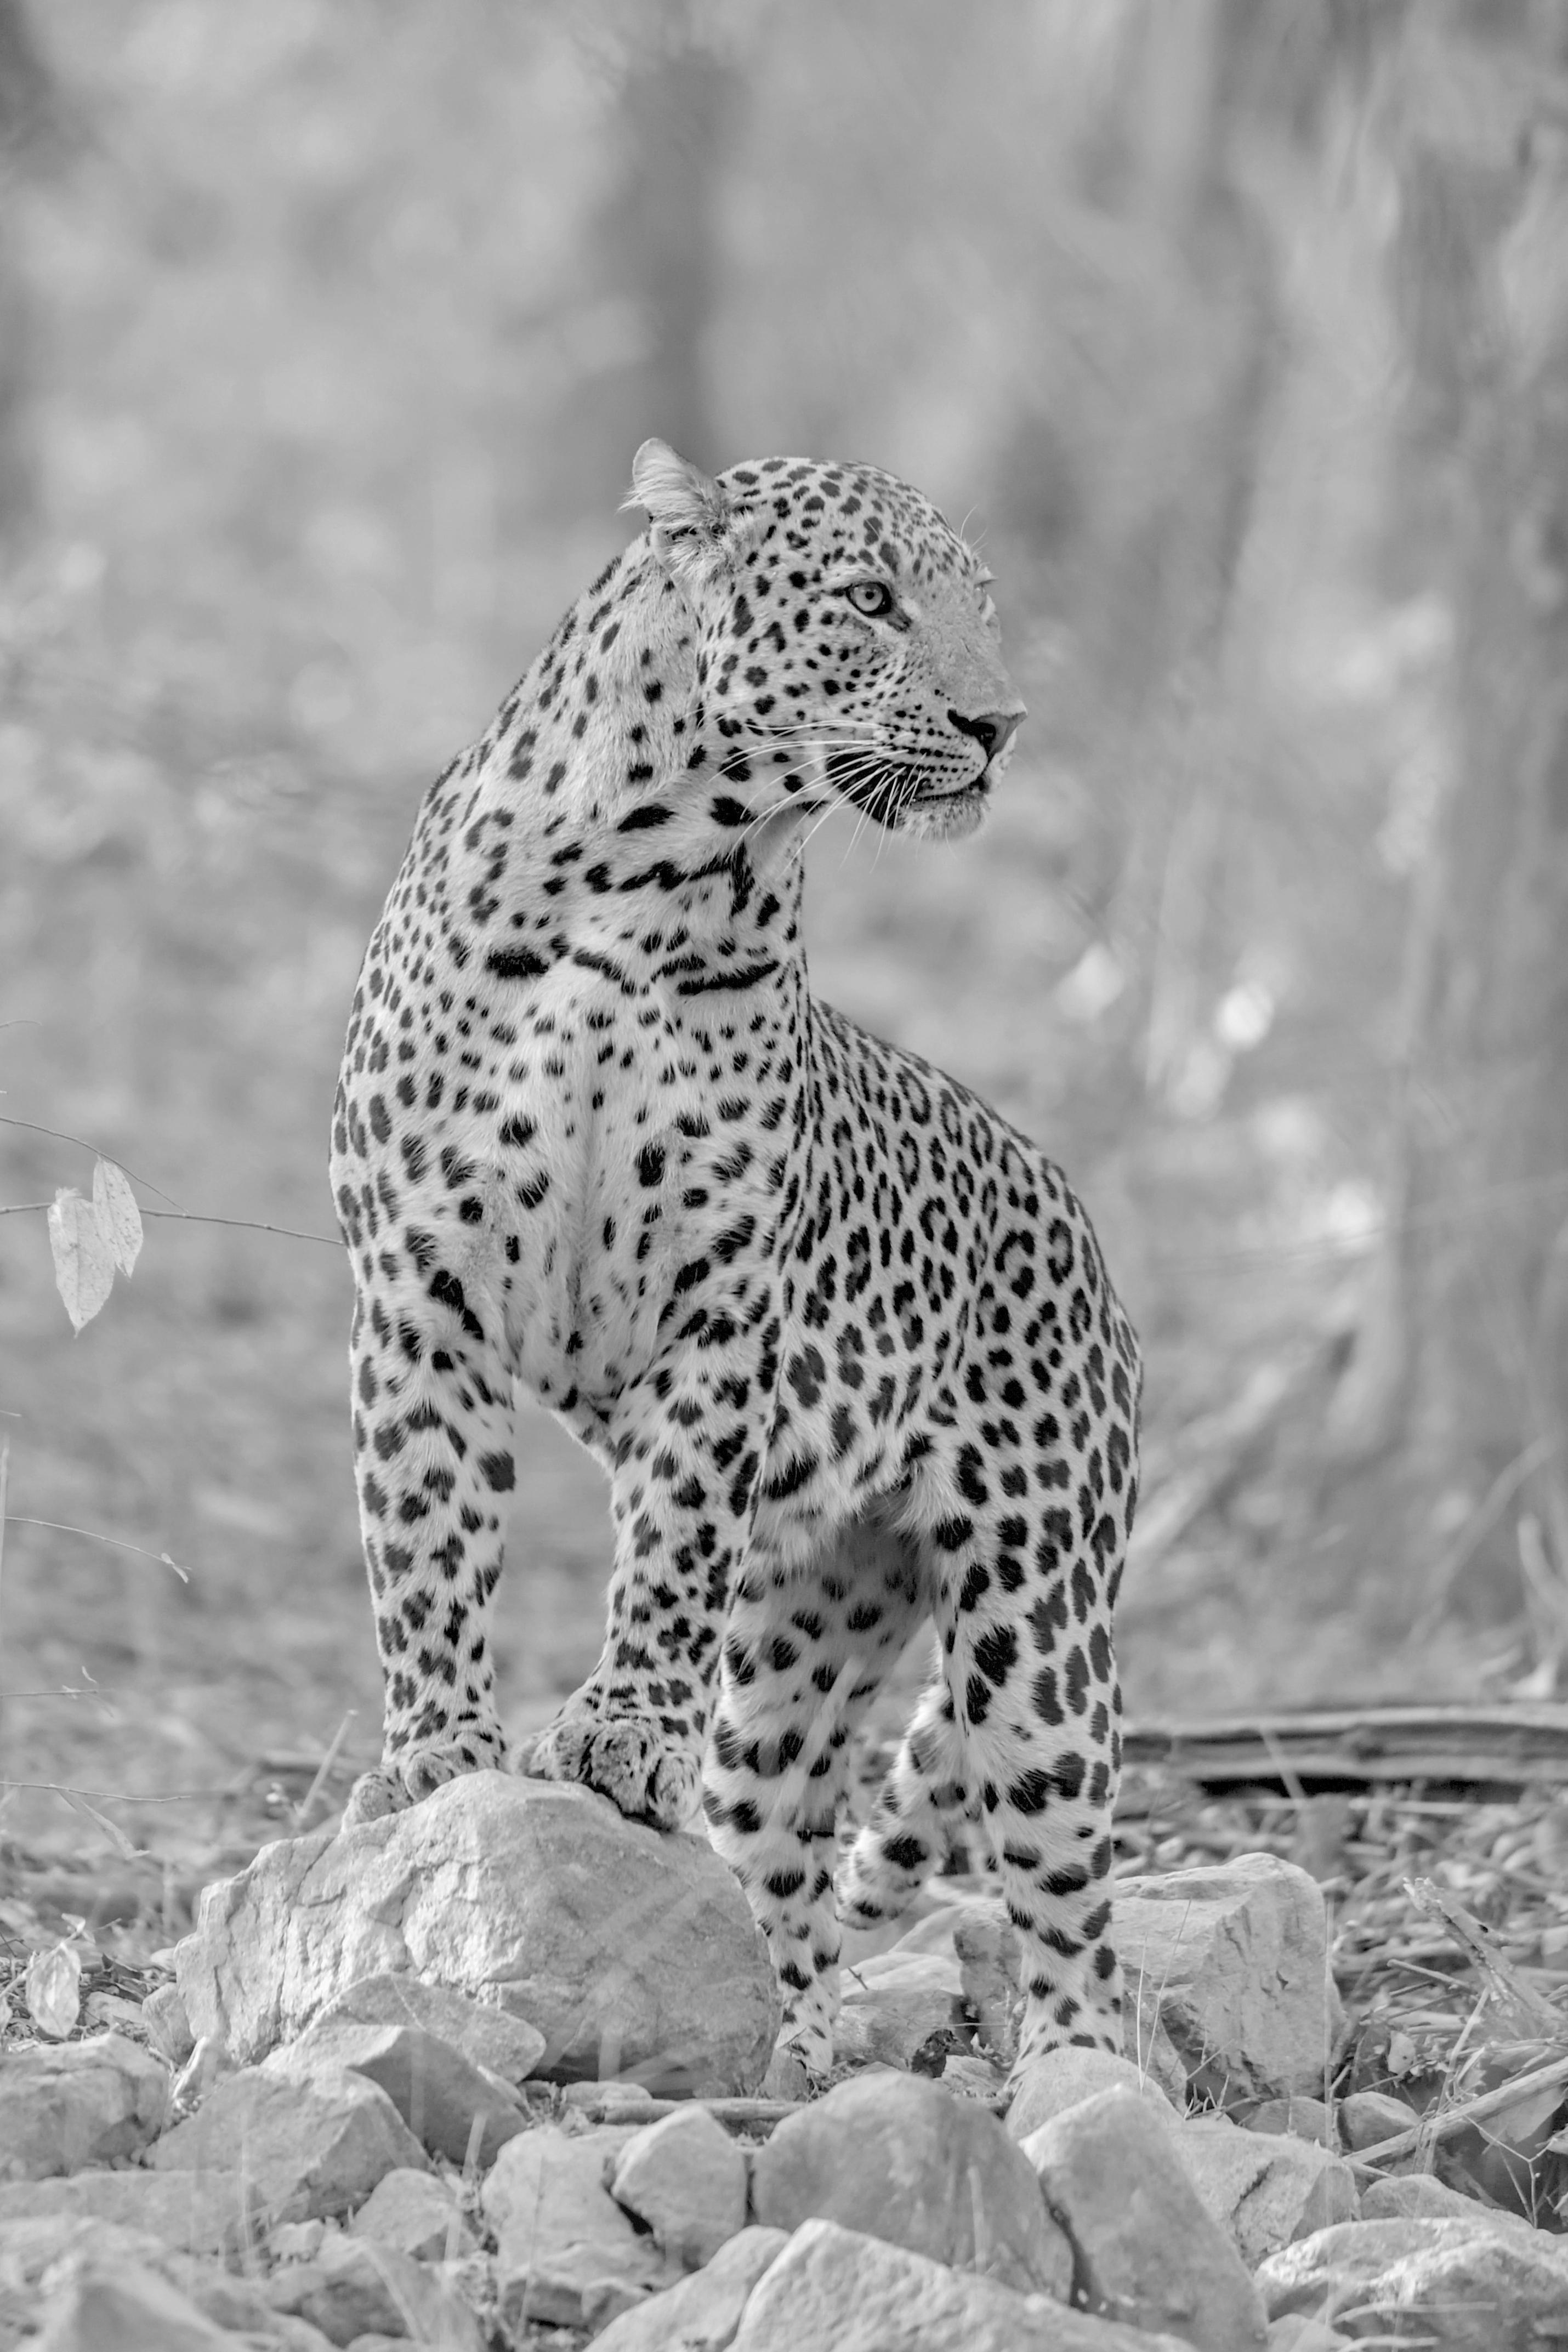 Aditya Dicky Singh Black and White Photograph – Großer Leopard Schwarz Weiß Landschaft Fotografie Natur Wildtiere Katze Wald Kenia